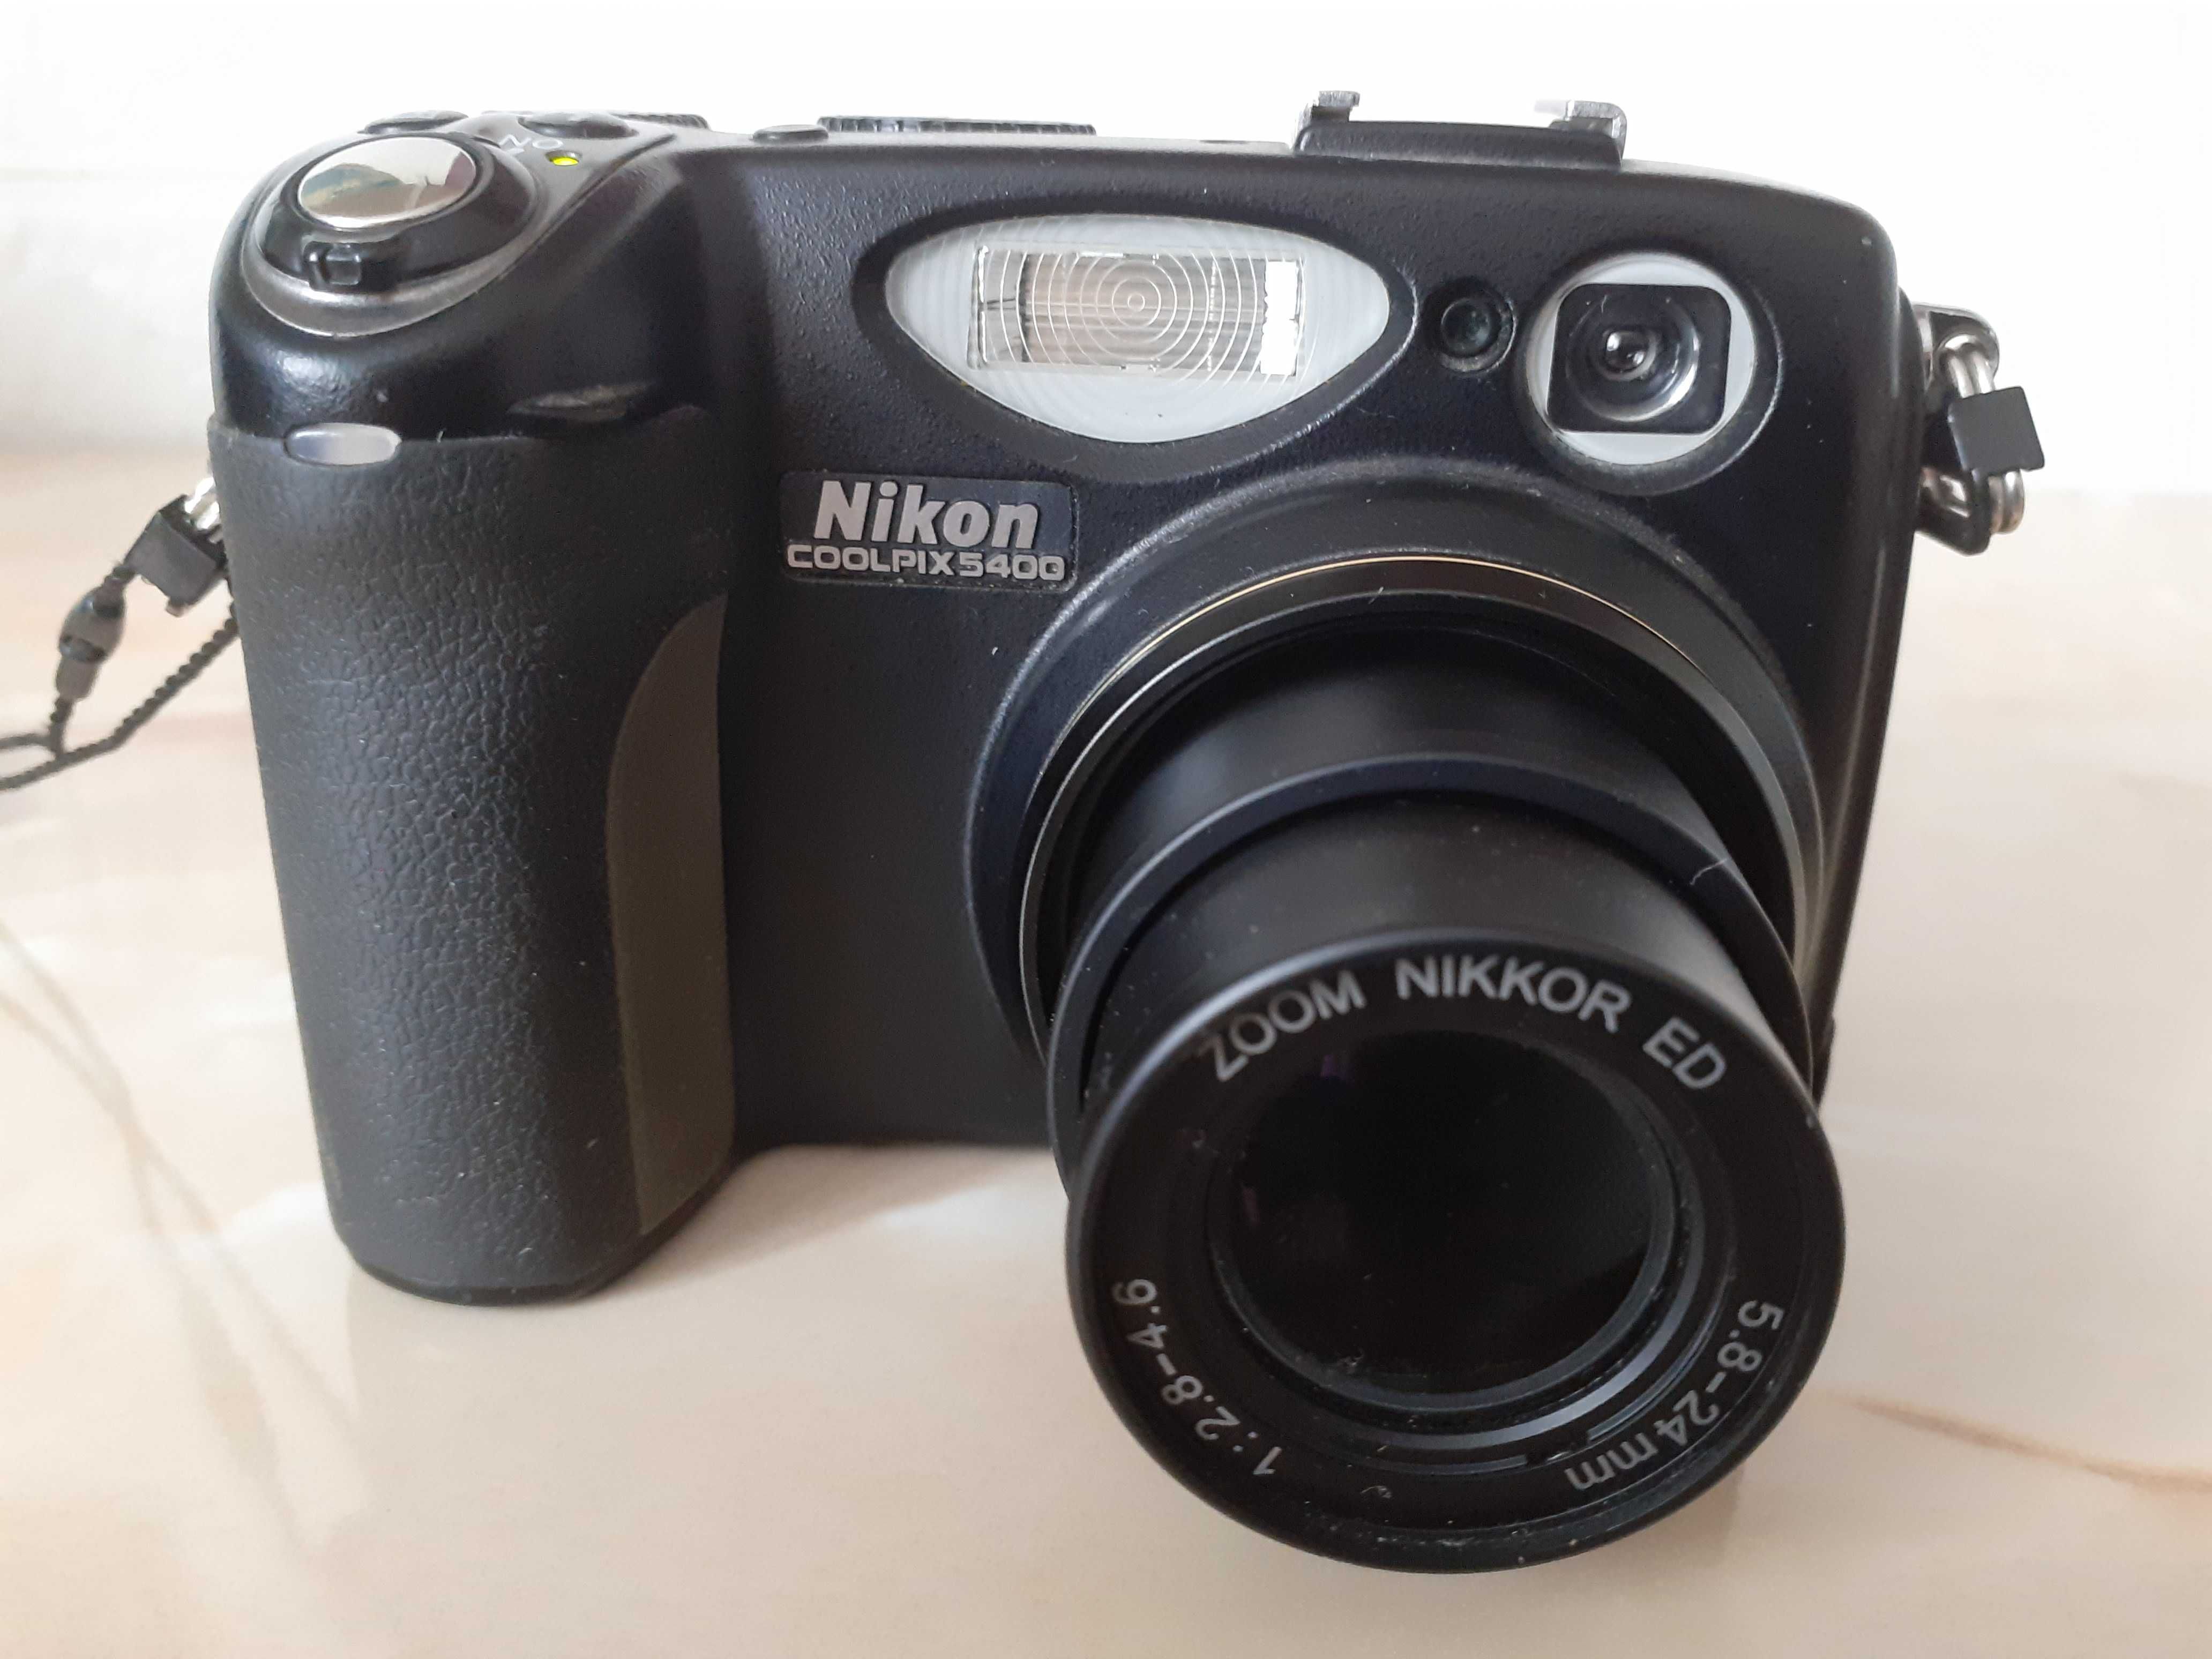 Aparat foto Nikon Coolpix 5400 5.1 MP.